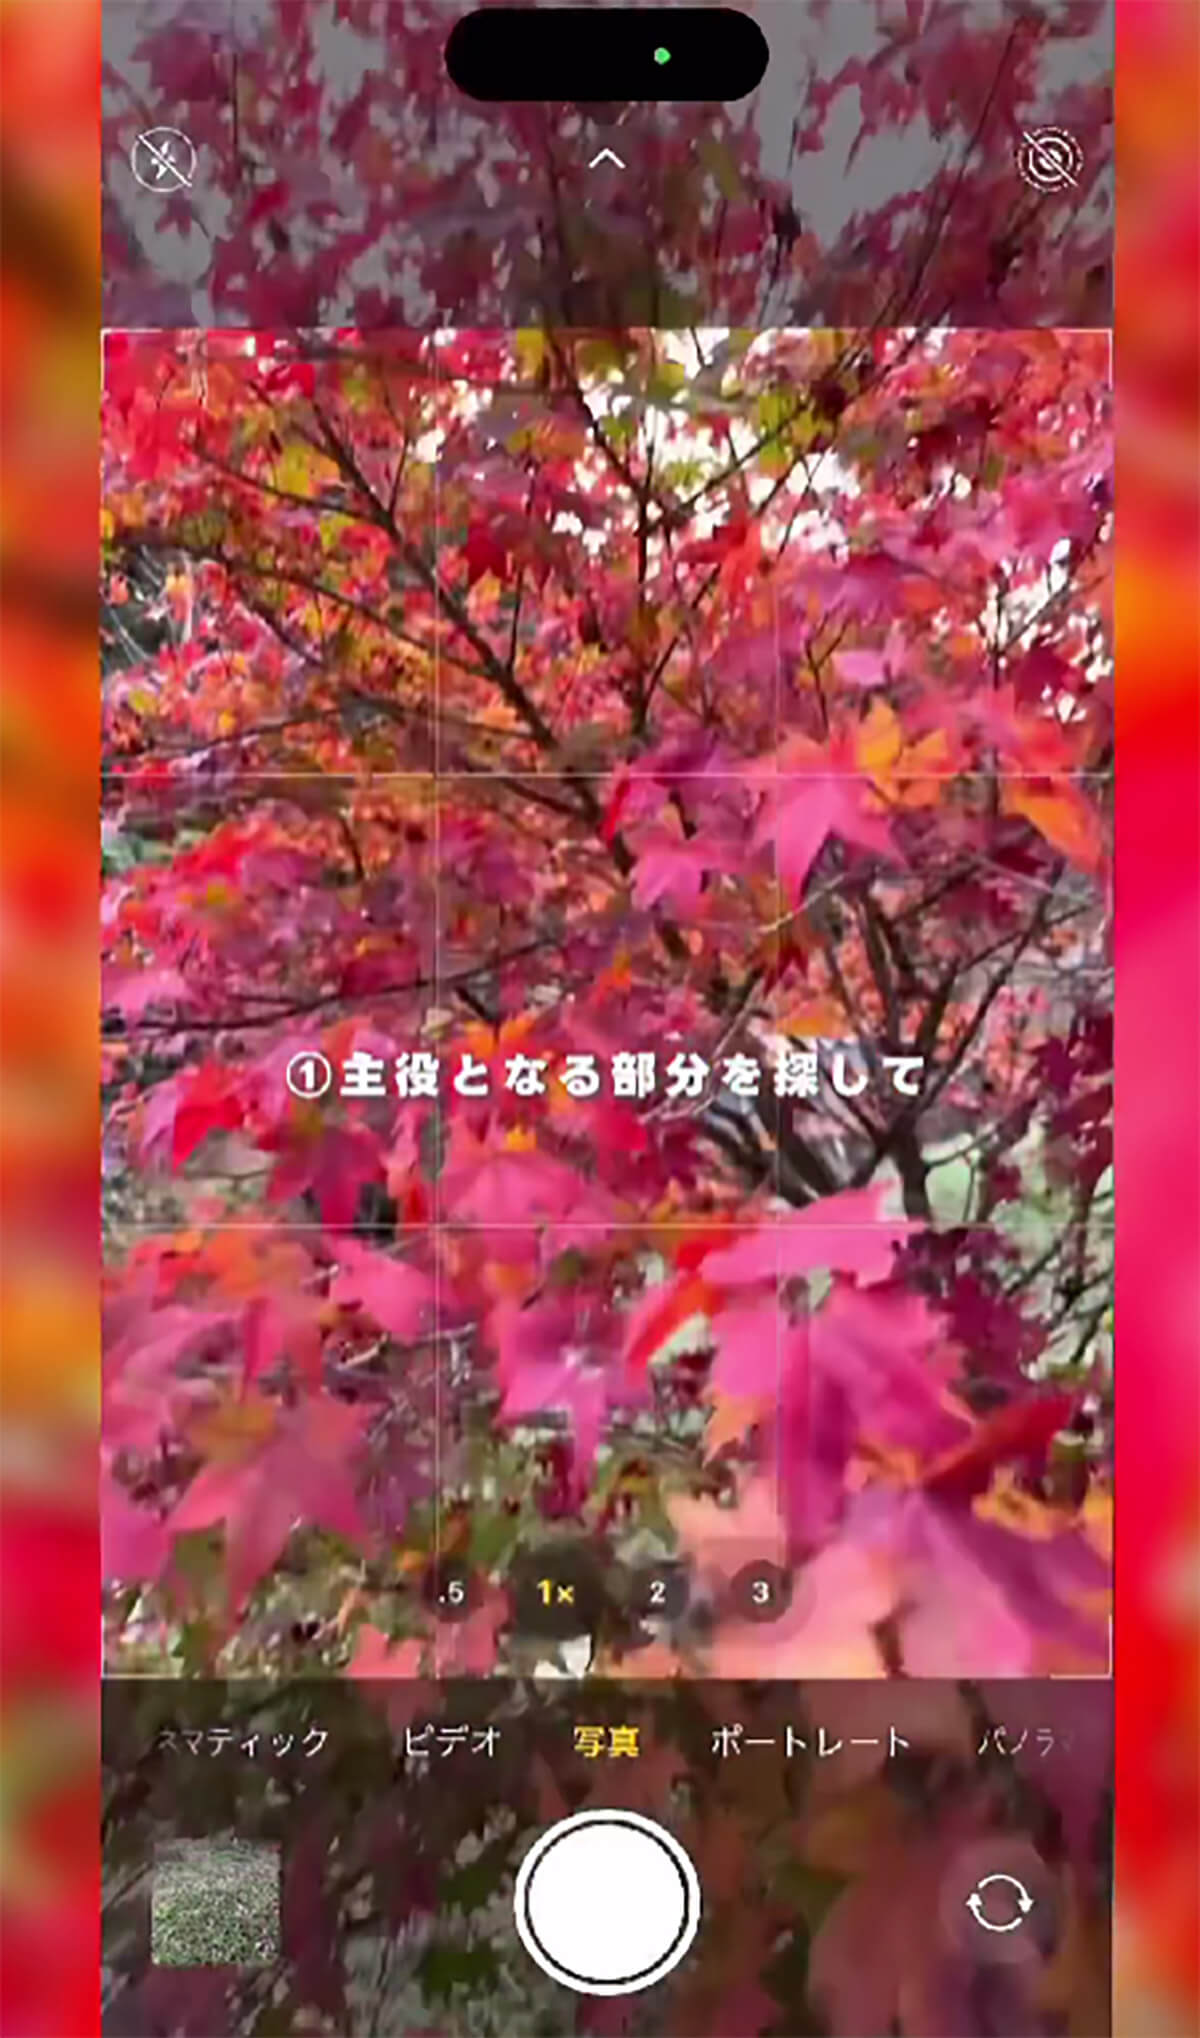  iPhoneのカメラで紅葉を綺麗に撮影する方法1